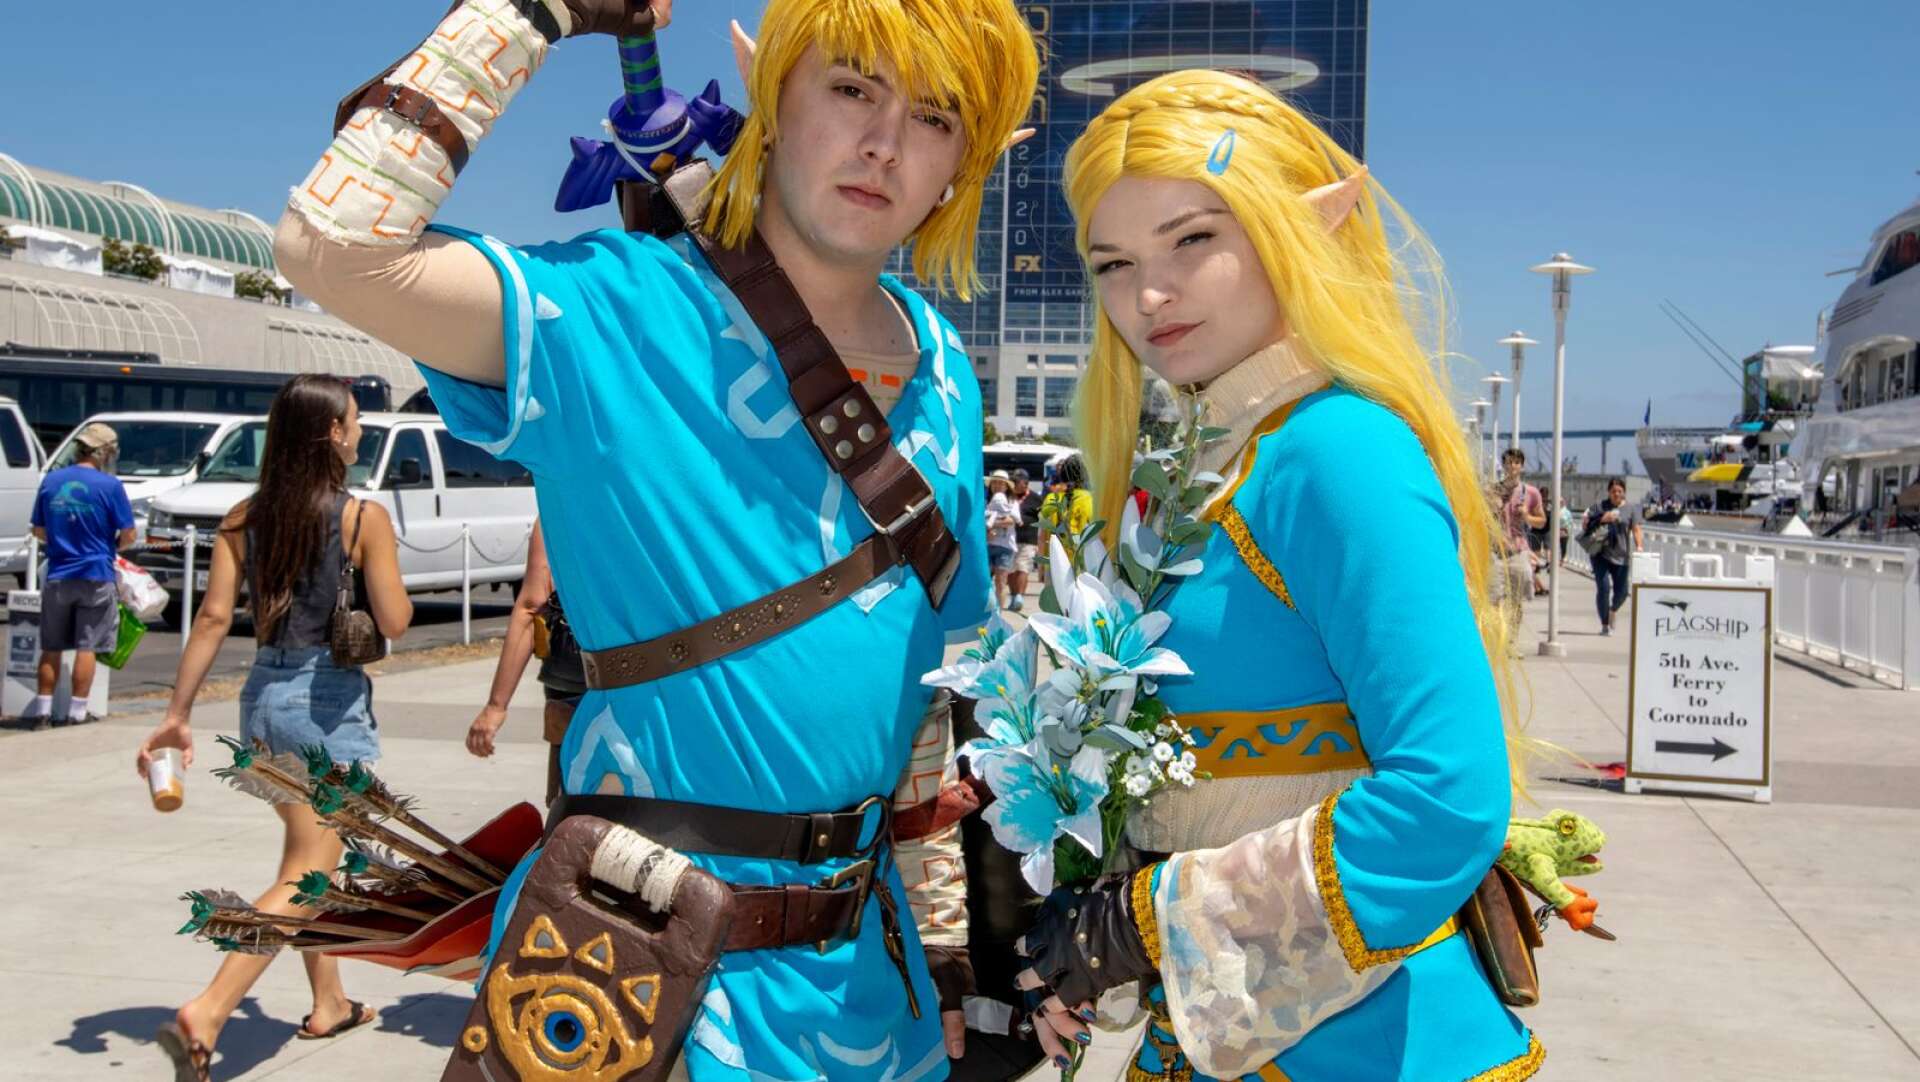 Några av de hängivna fansen - Christian Capuccino klädd som Link och Dayna Austin som Zelda. Bilden tagen i San Diego under Comic-Con 2019.